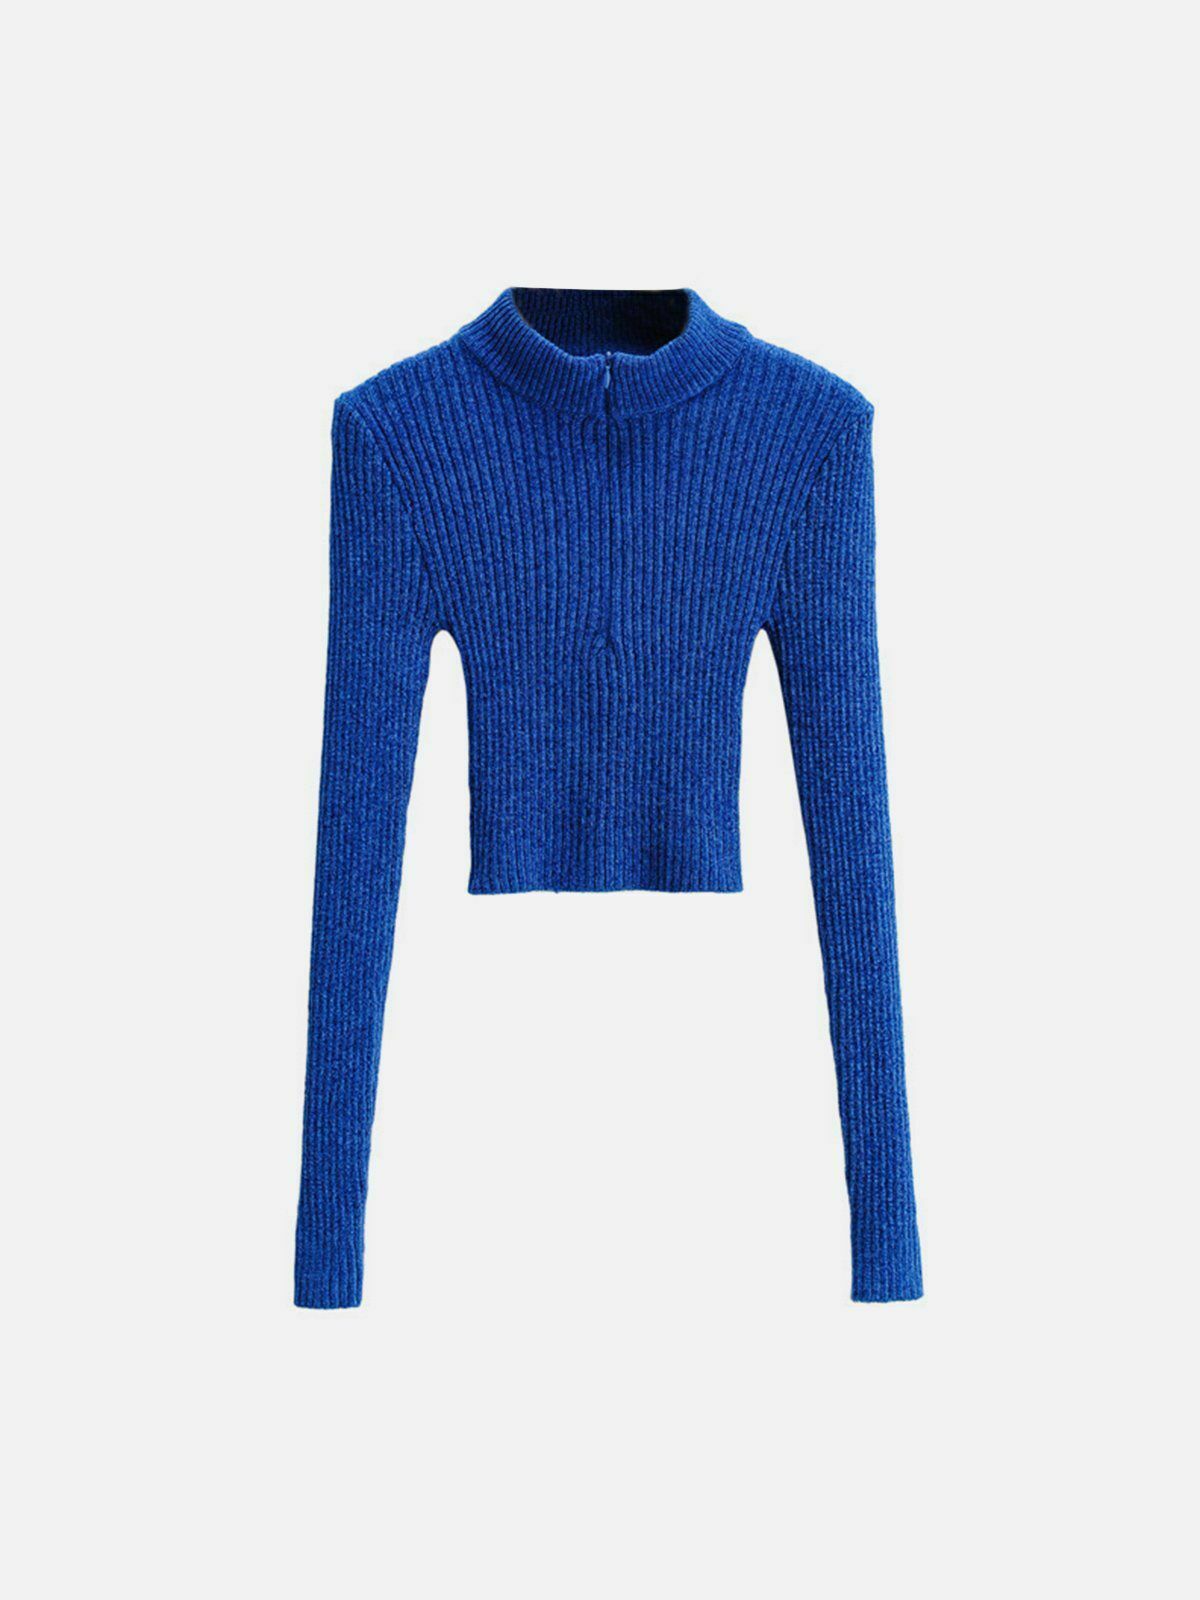 vibrant zipper knit sweater urban streetwear 5817